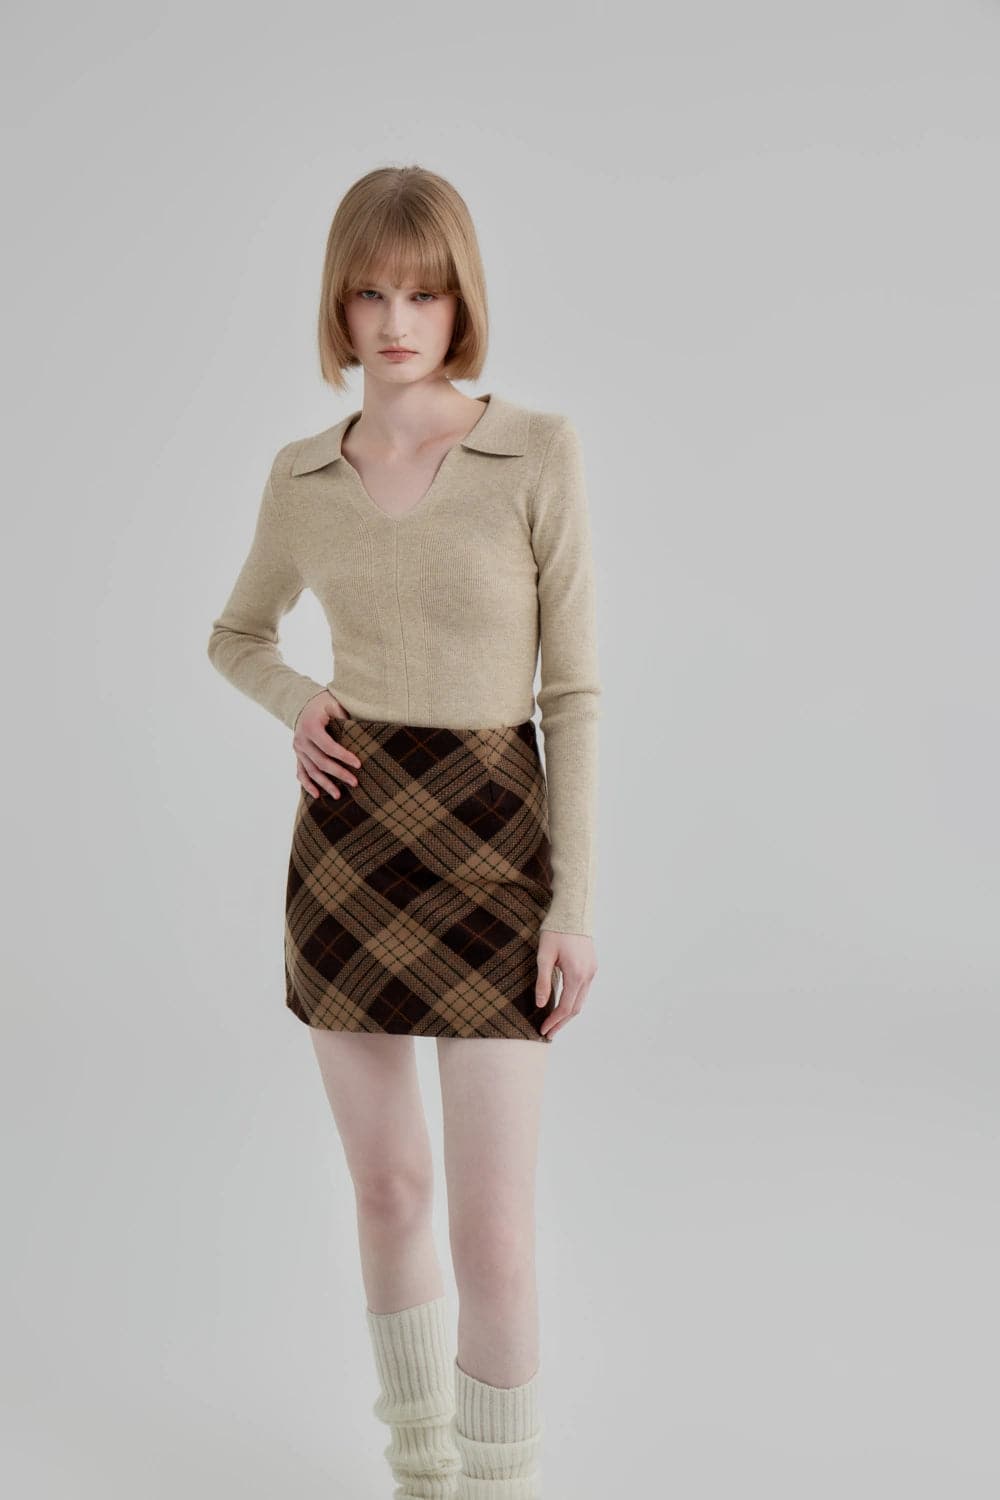 Skirt A-Line Plaid Klasik